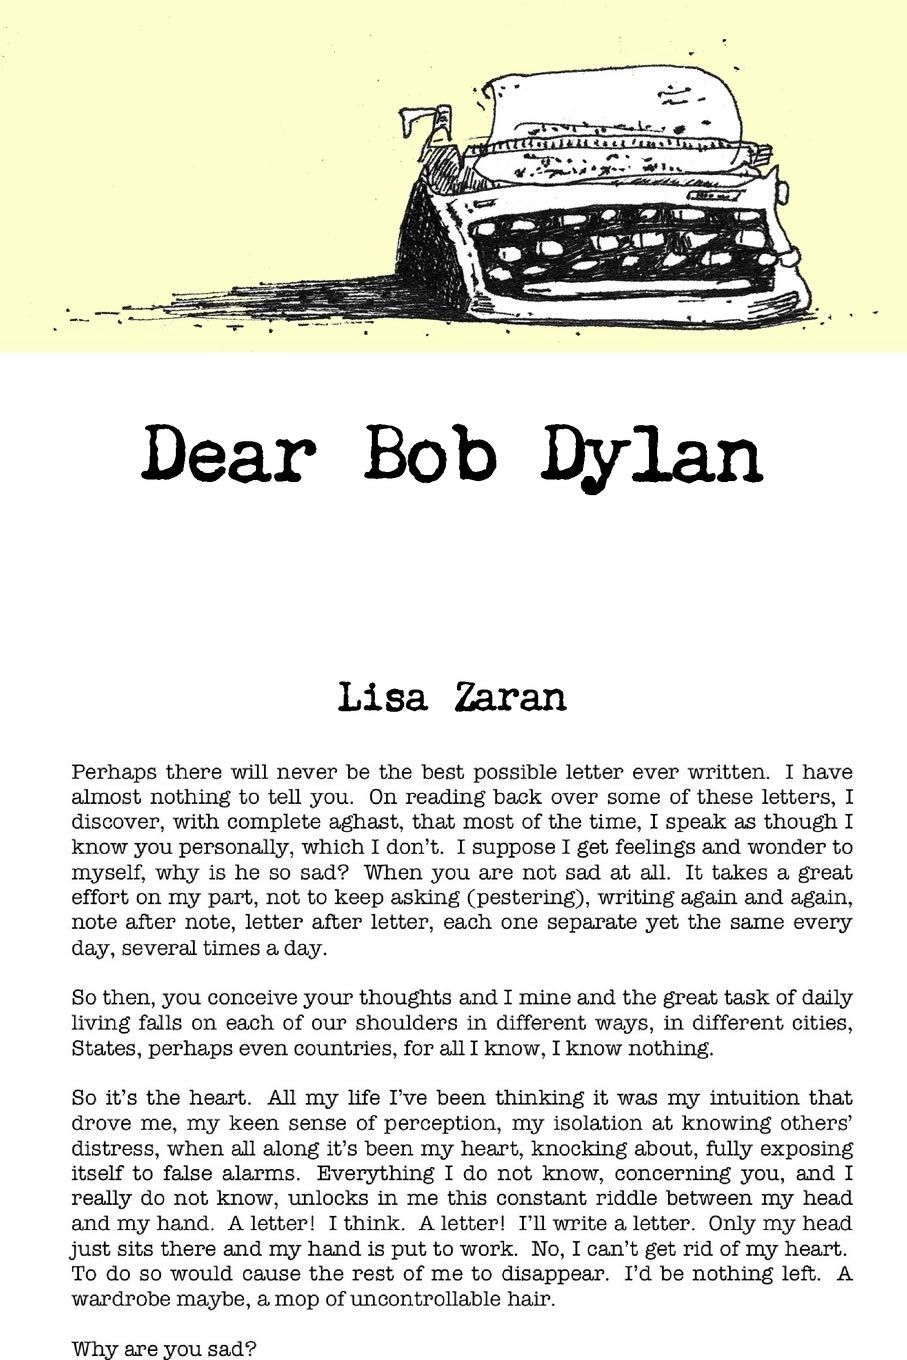 dear Bob Dylan book